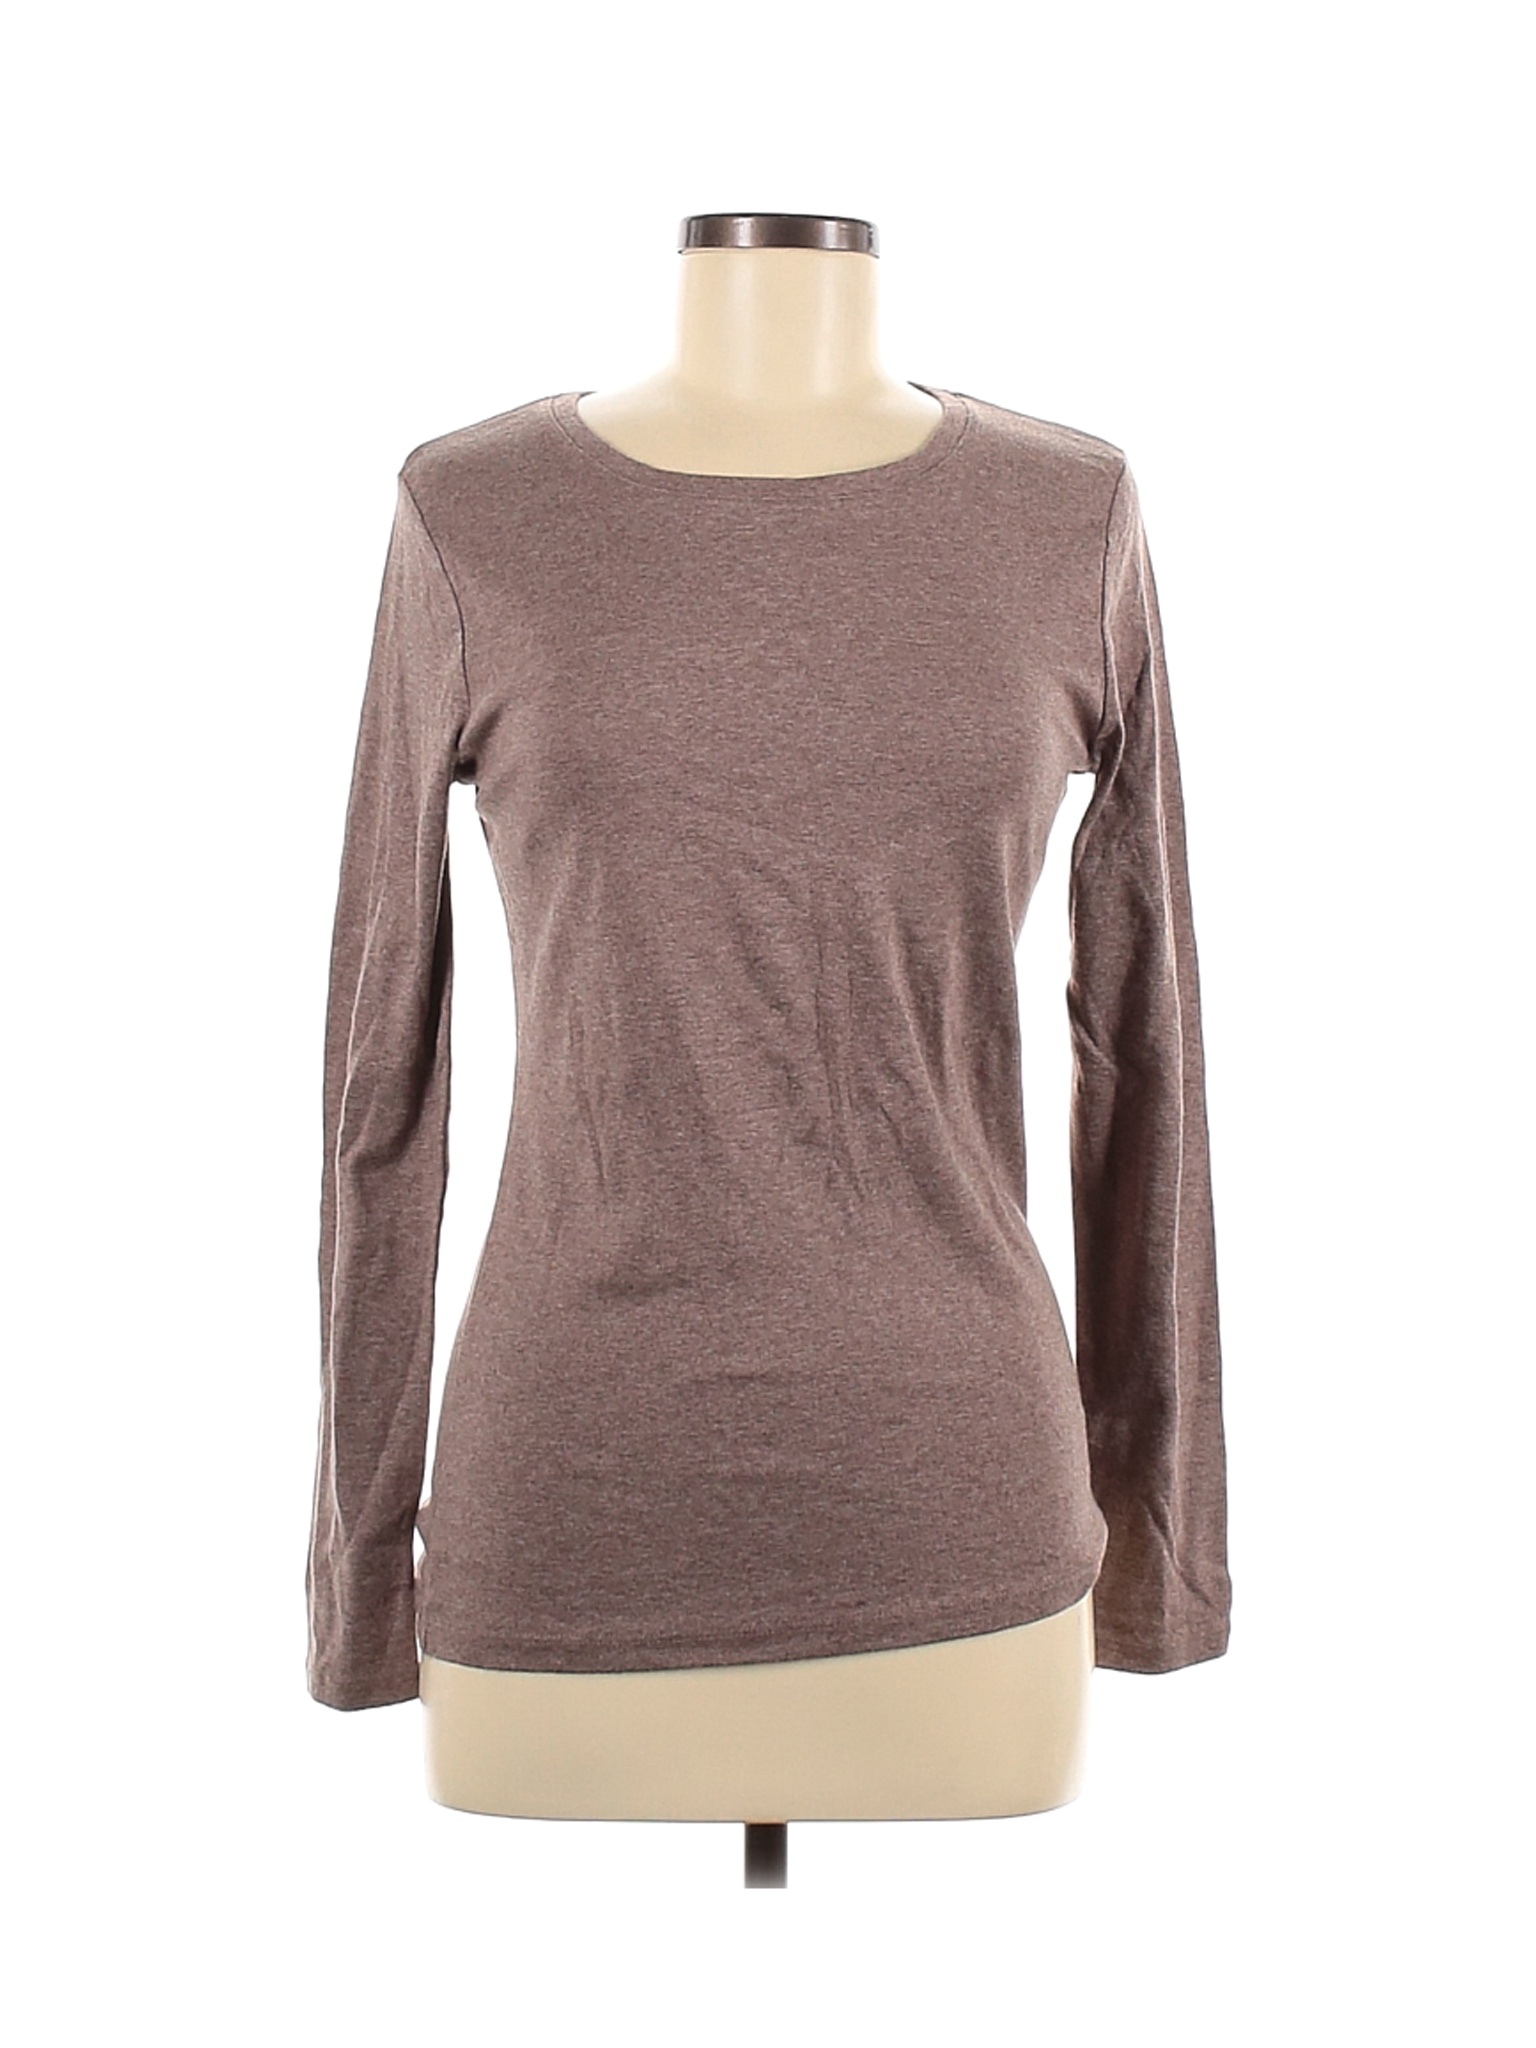 A New Day Women Brown Long Sleeve T-Shirt M | eBay